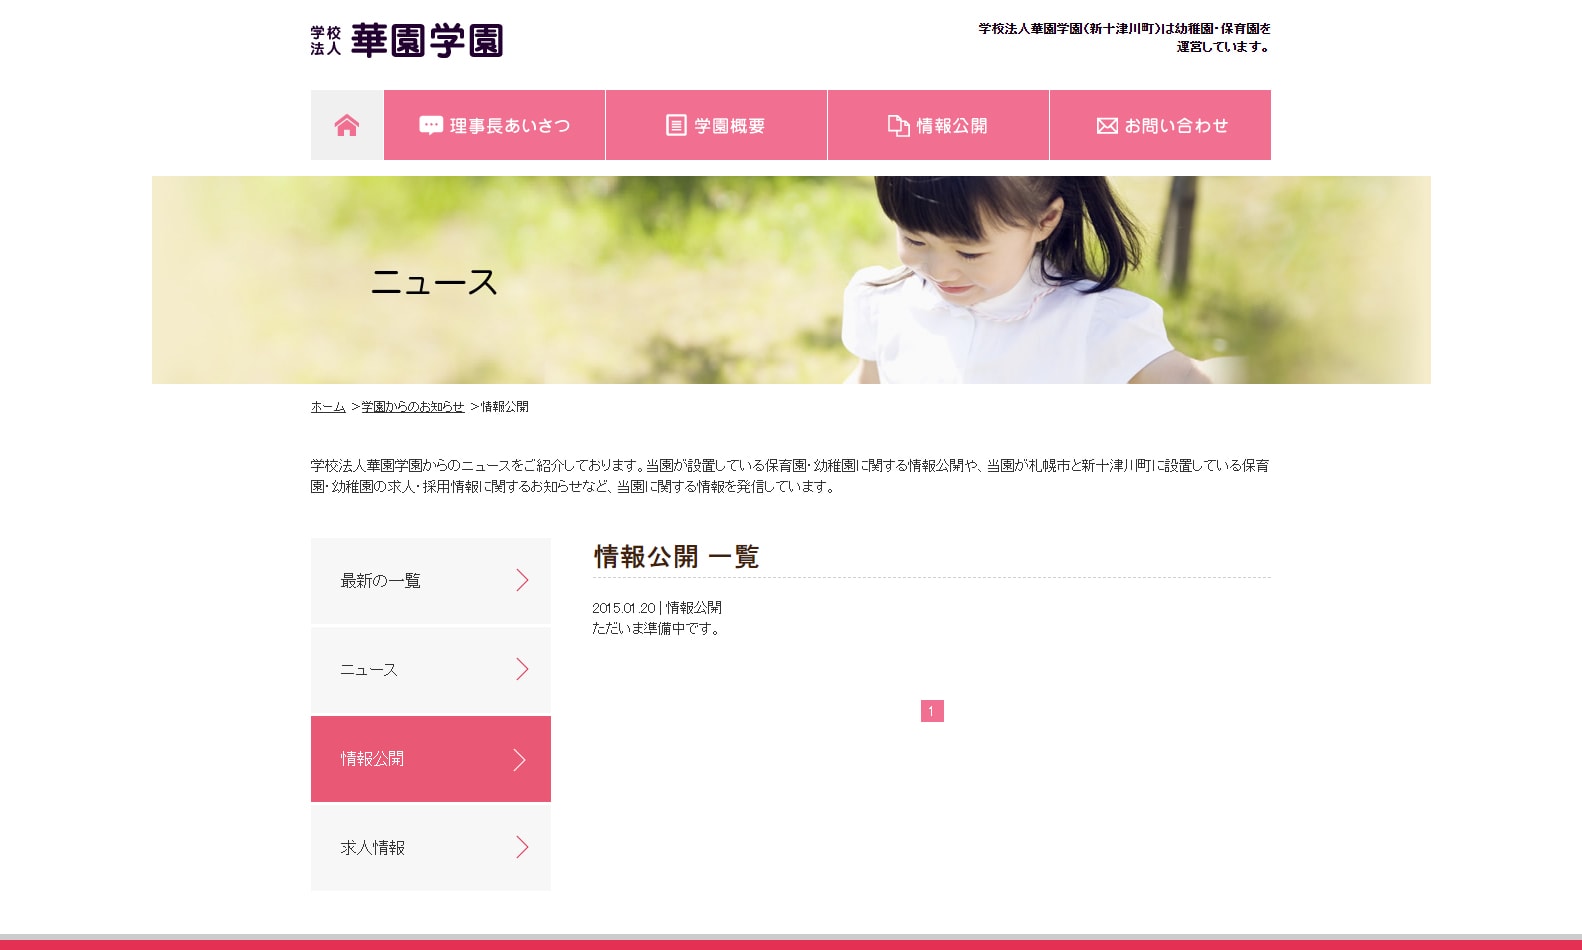 「学校法人華園学園」様サイトのページ画像3